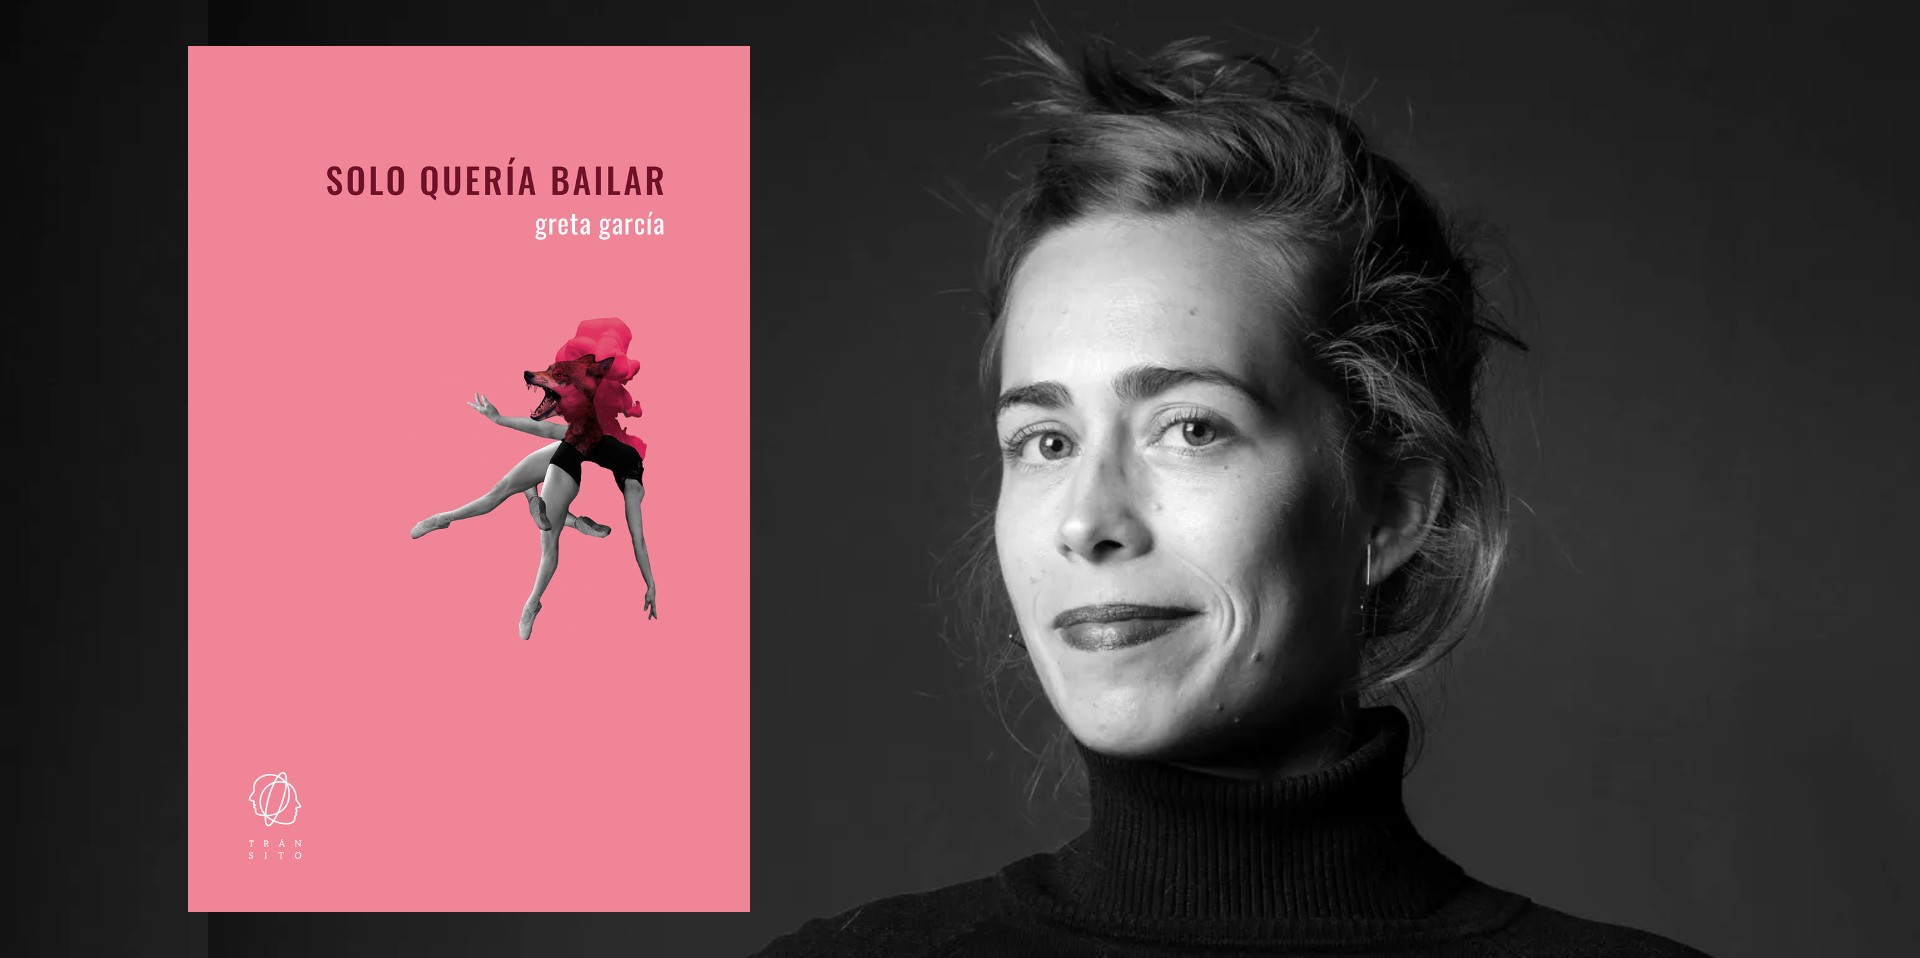 La bailarina sevillana Greta García, debuta como novelista con "Solo quería bailar", título publicado por la editorial Tránsito.